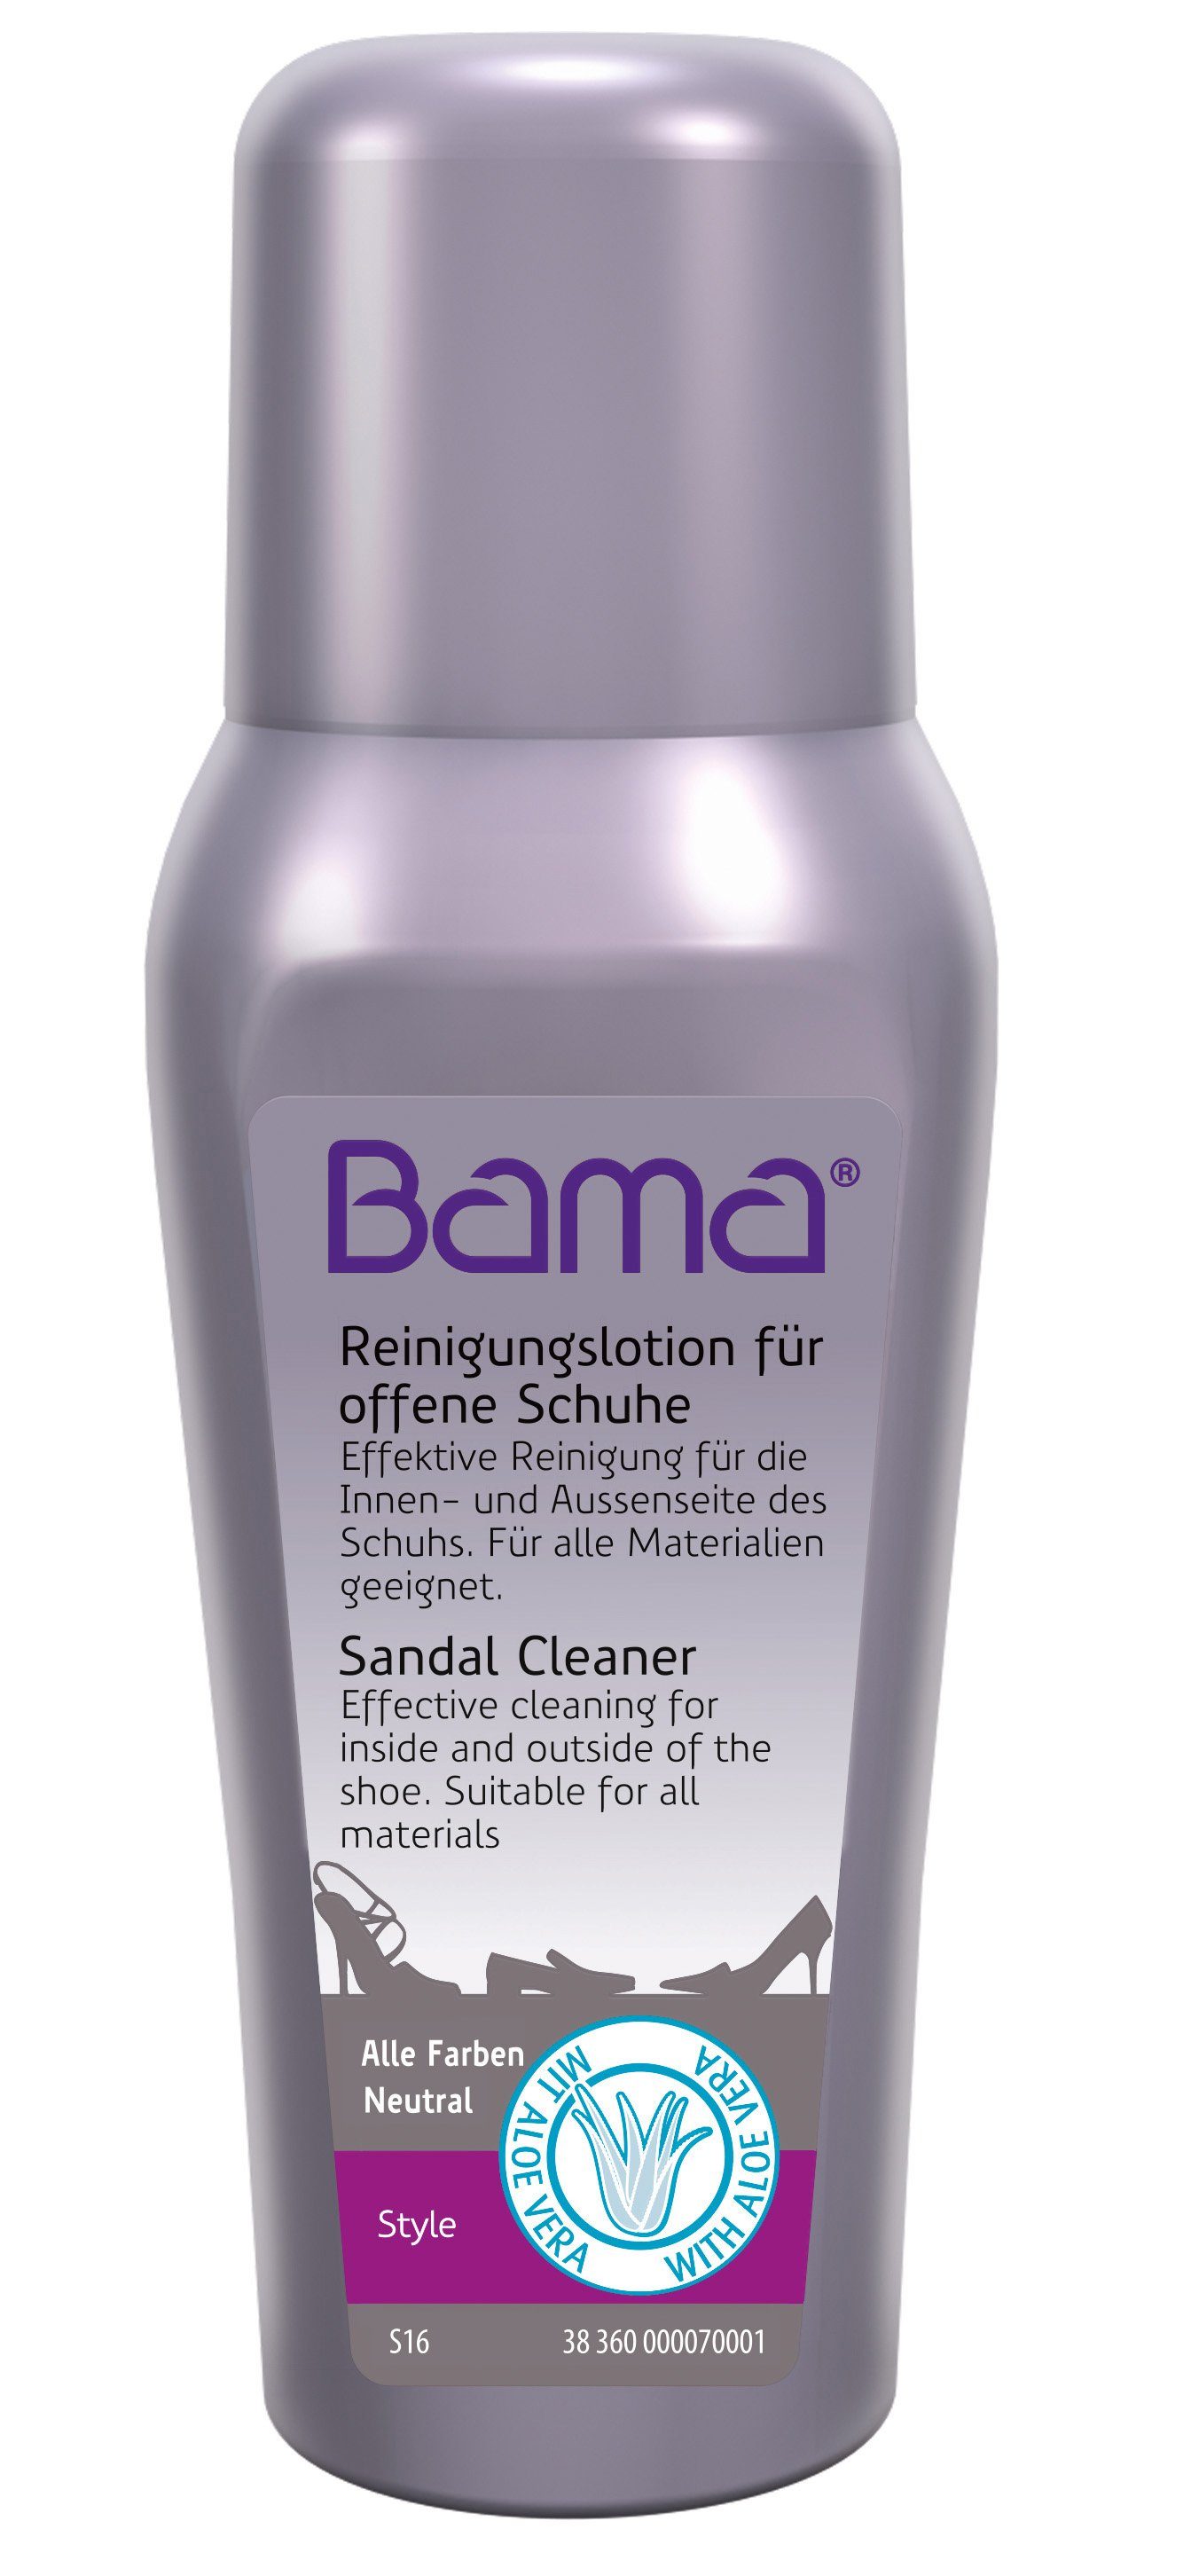 BAMA Group Sandal Cleaner - Reinigungslotion für offene Schuhe mit Aloe Vera Schuhreiniger